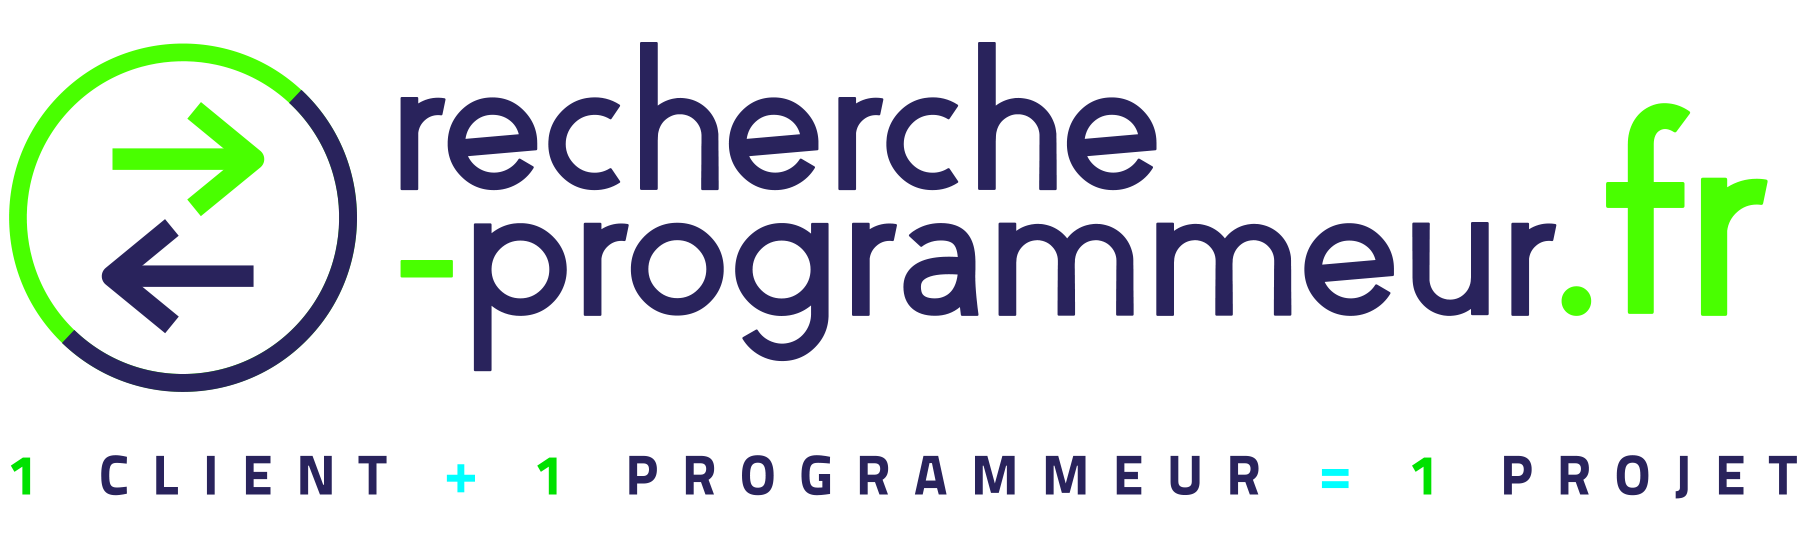 Logo recherche programmeur